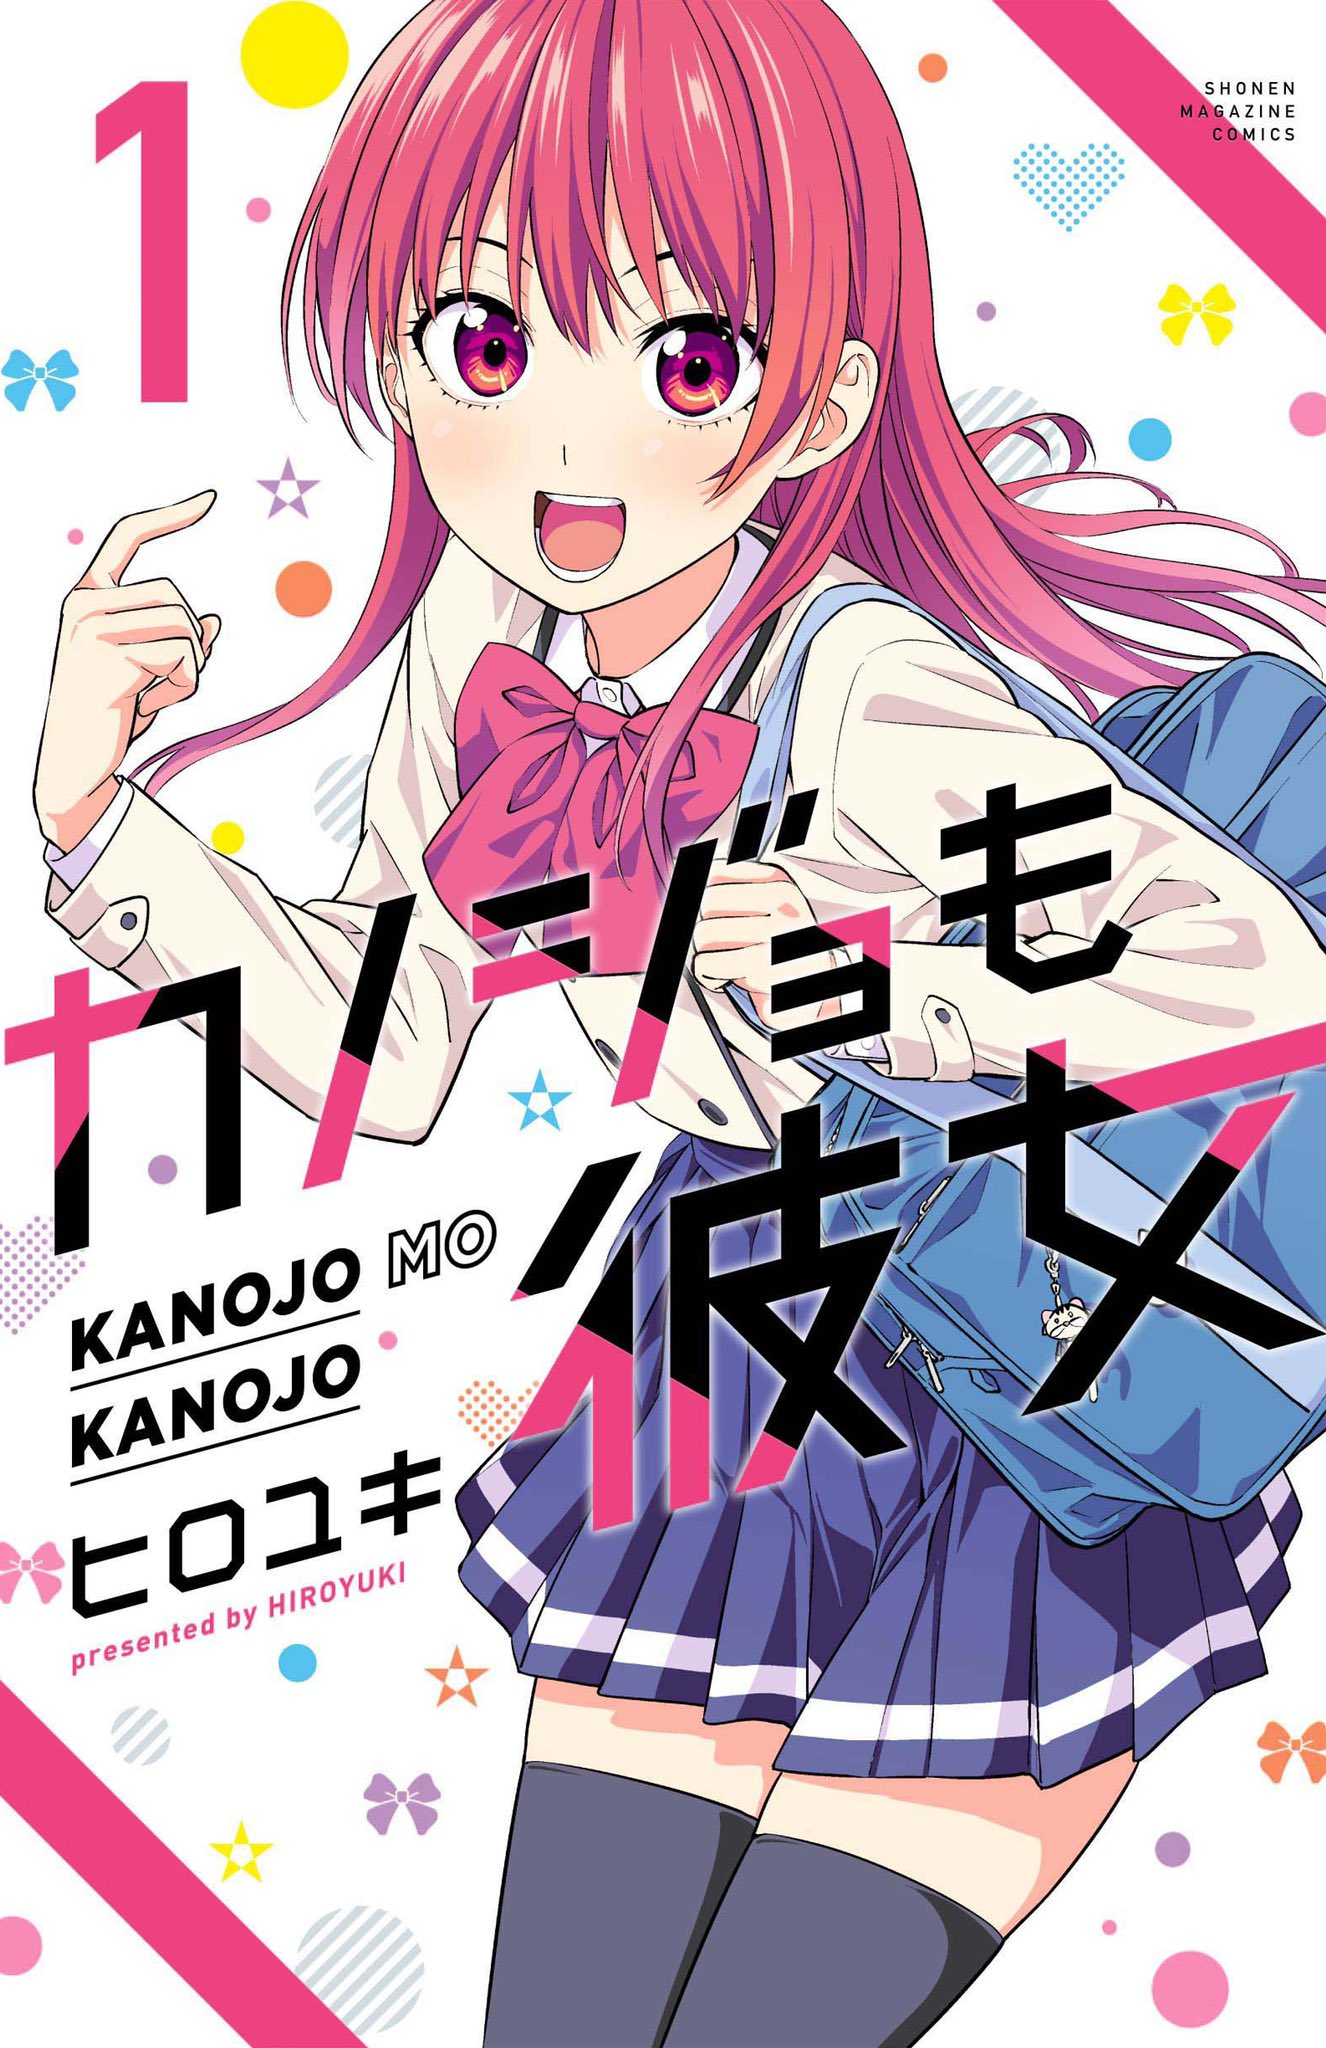 Kanojo mo Kanojo updated their cover photo. - Kanojo mo Kanojo